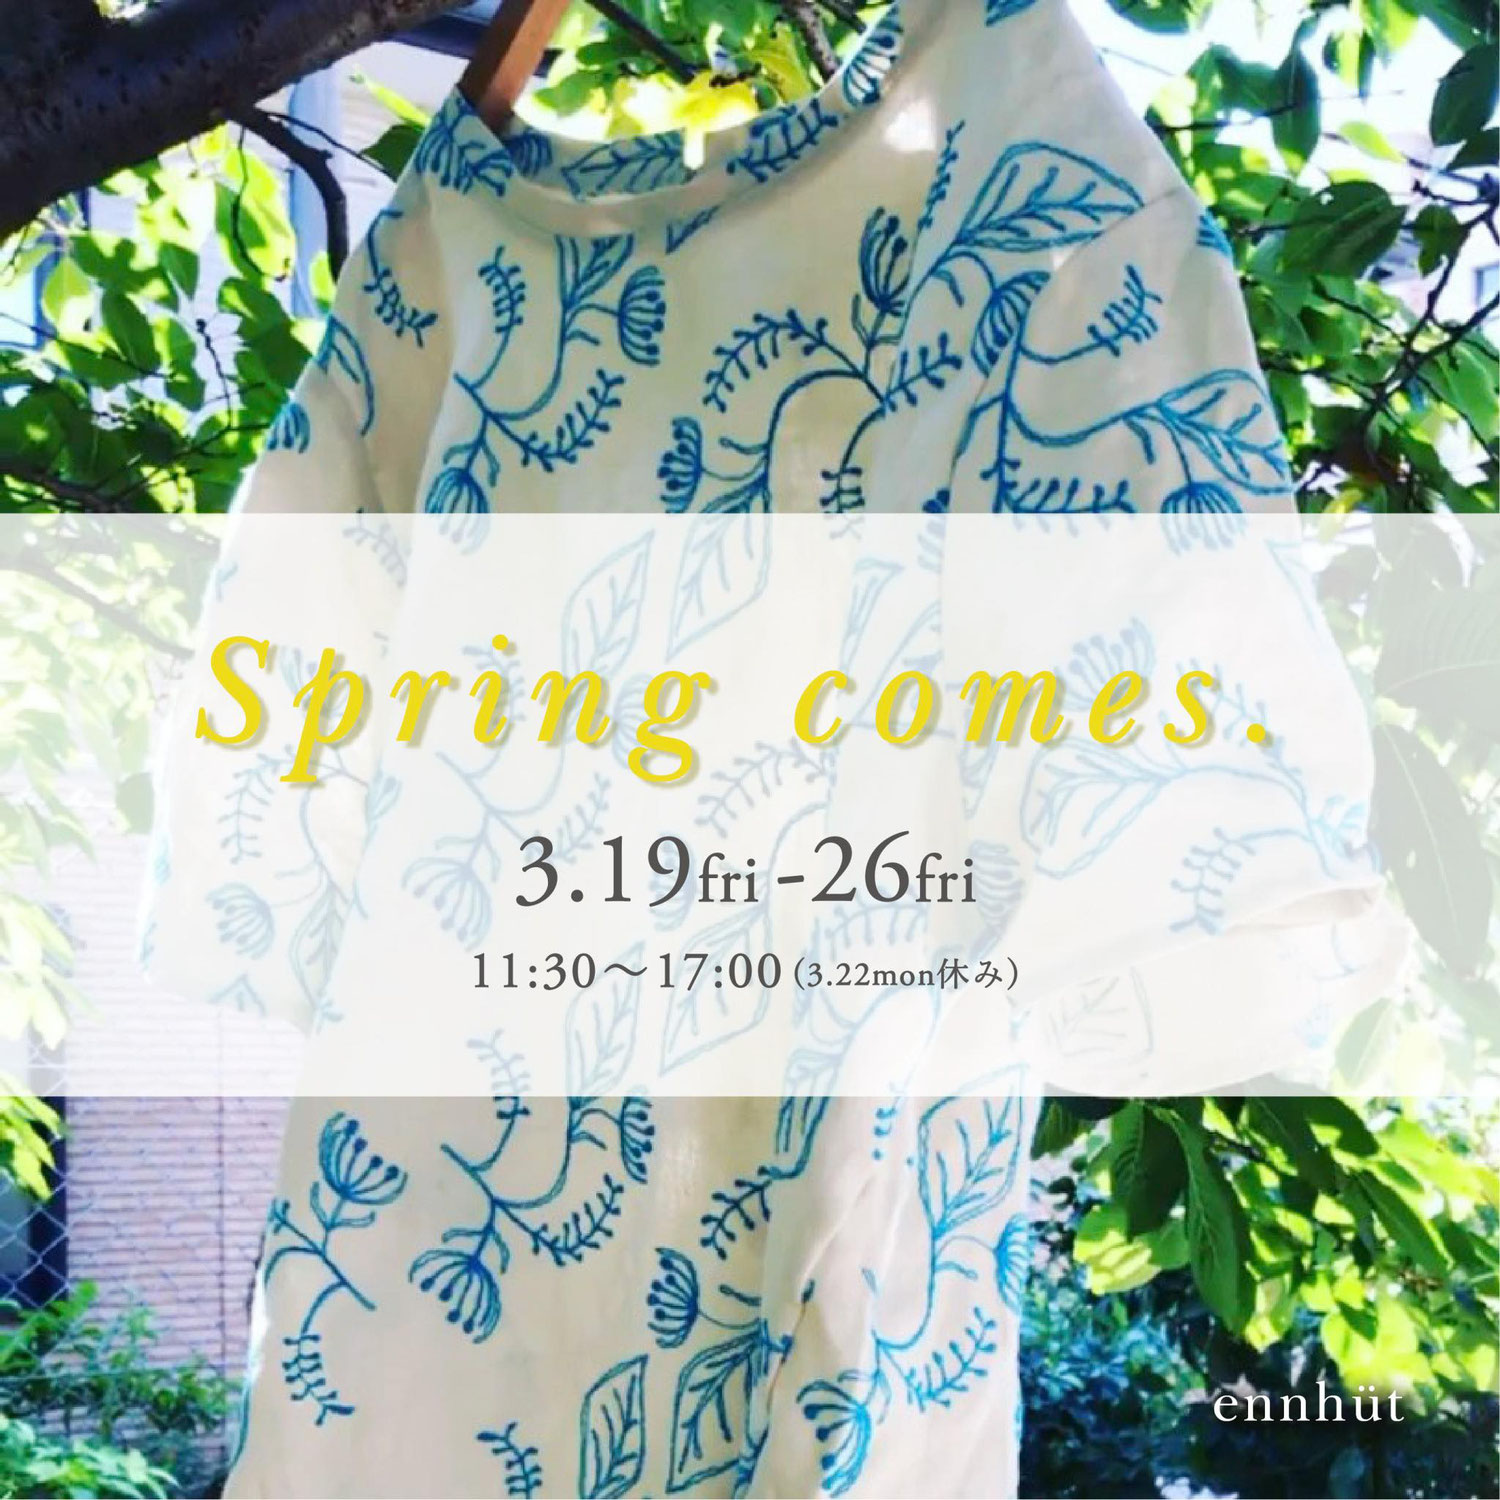 ギャラリーEnne_nittouren企画展「Spring Comes. 〜待ちわびた春」2021.3.25